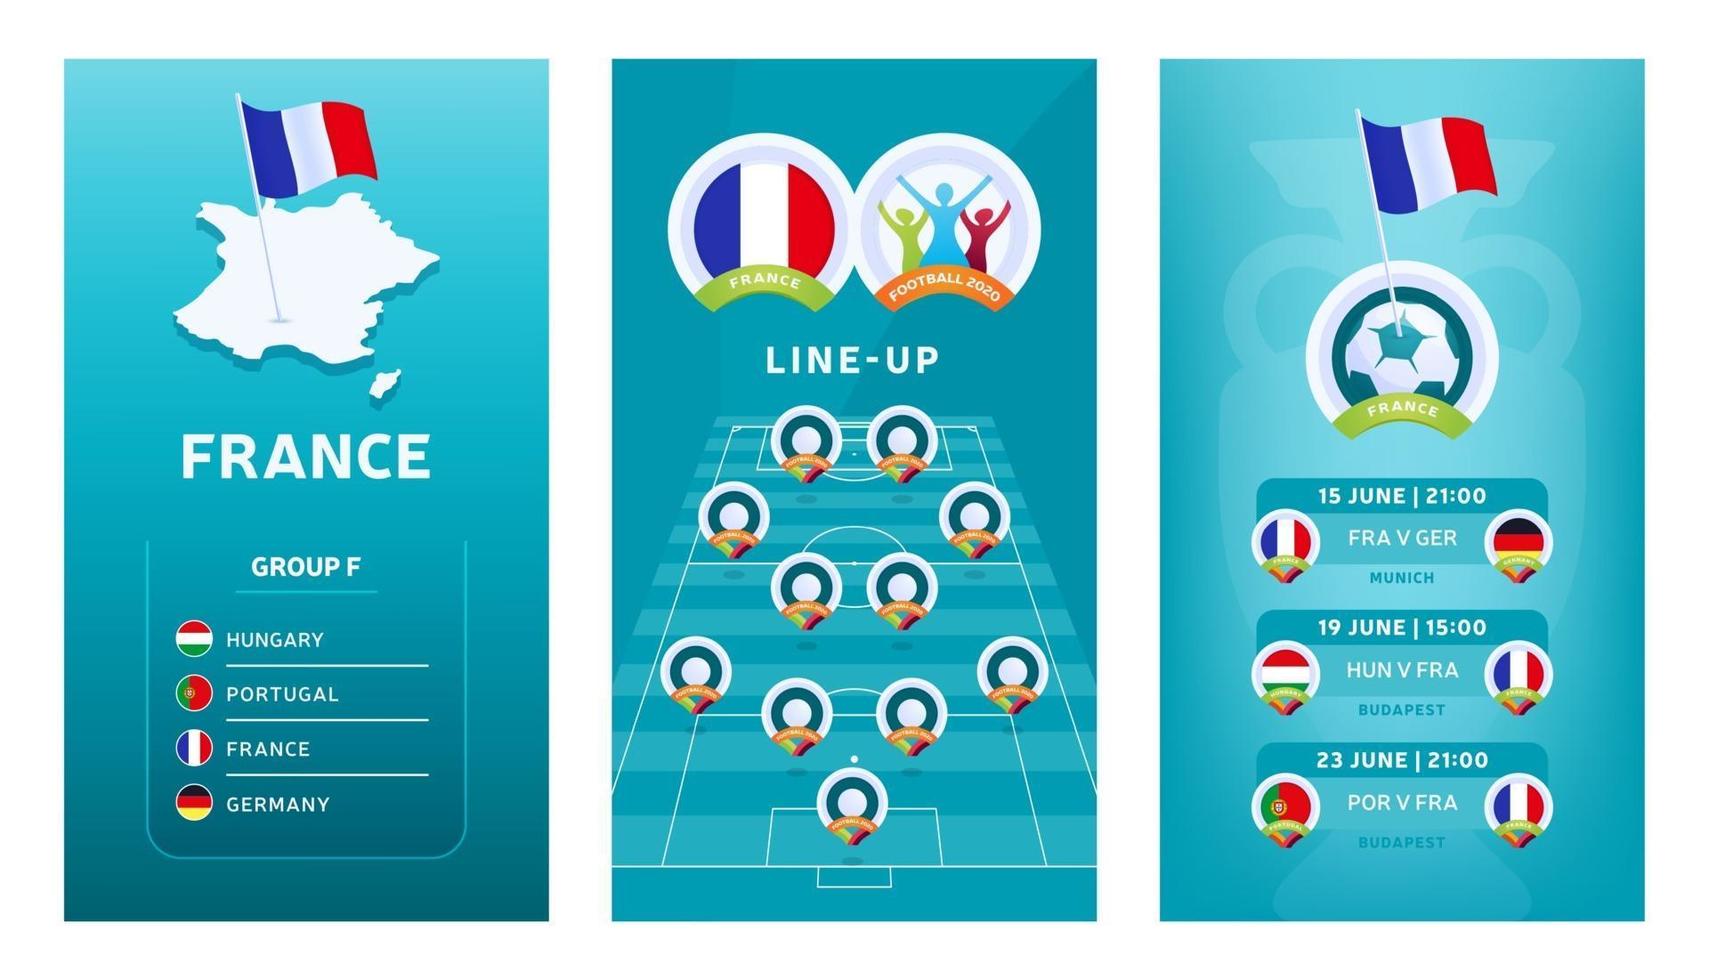 europeisk fotboll vertikal banner för 2020 2020 för sociala medier. frankrike grupp f banner med isometrisk karta, pin flagga, match schema och line-up på fotbollsplan vektor